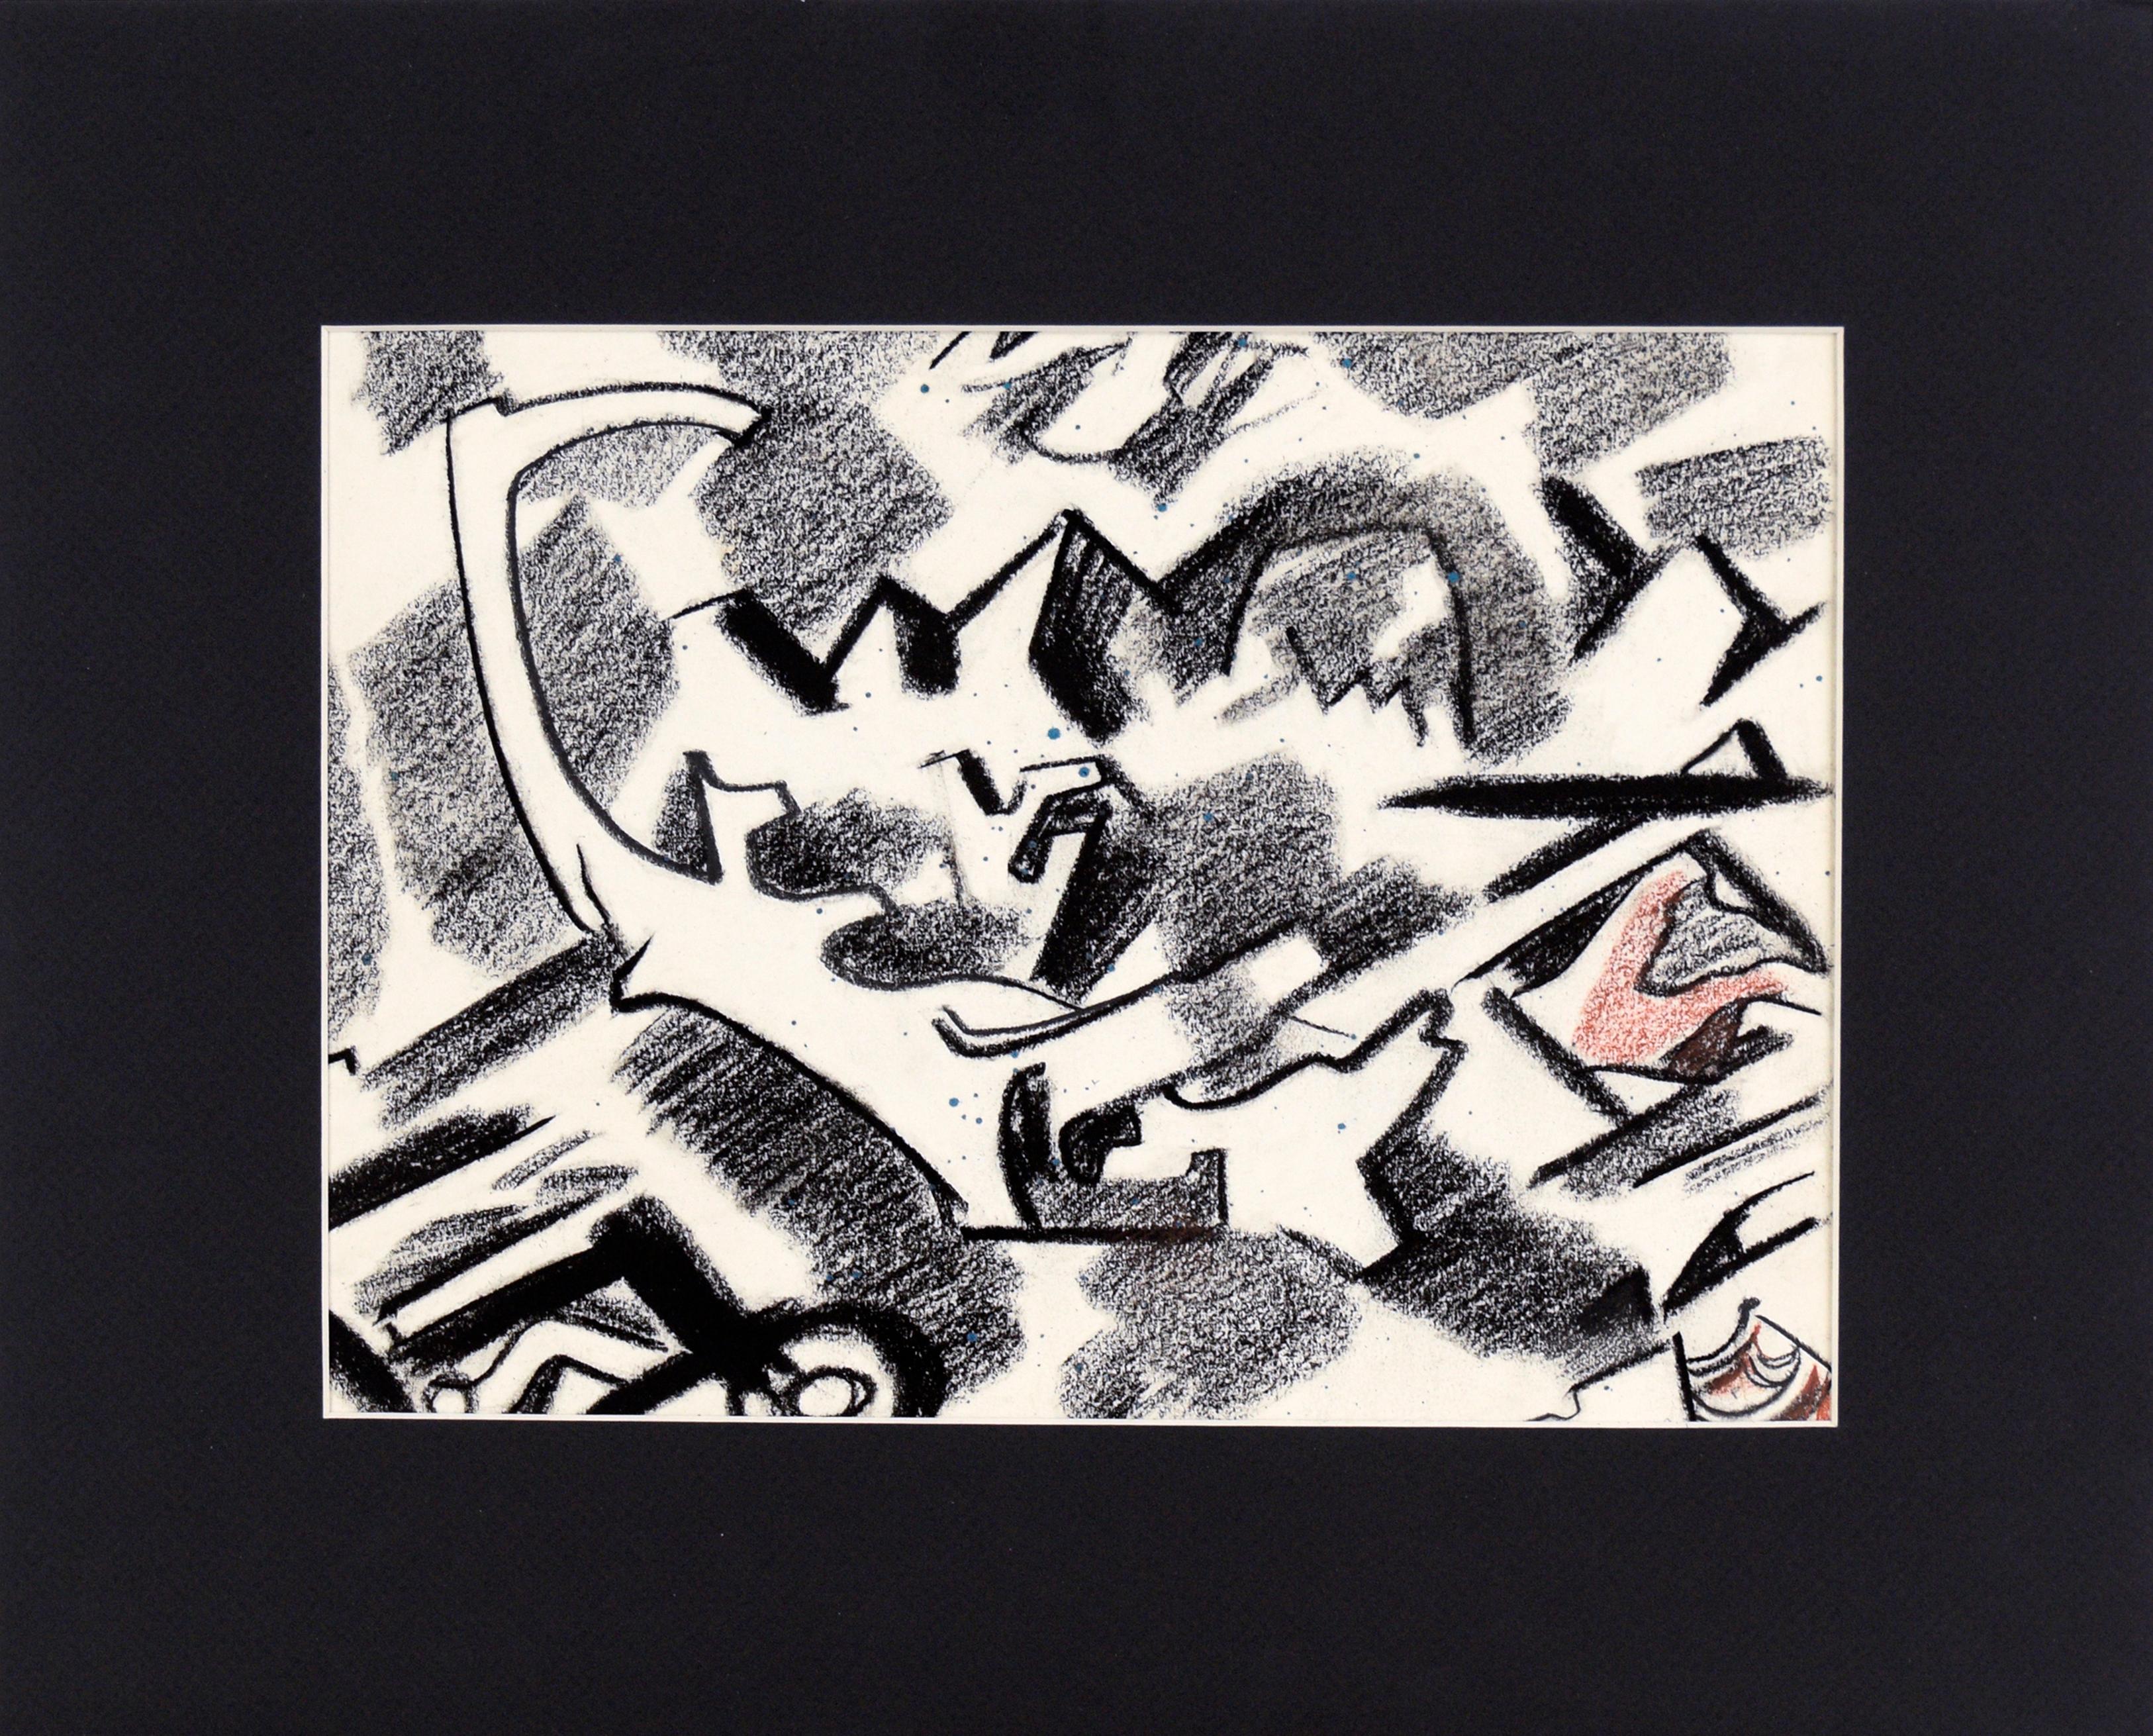 East Bay III Abstrahierte Landschaft aus der Mitte des Jahrhunderts von Erle Loran

Dynamische, abstrahierte, geometrische Landschaftszeichnung der kalifornischen East Bay aus der Mitte des Jahrhunderts von Erle Loran (Amerikaner, 1905-1999), um